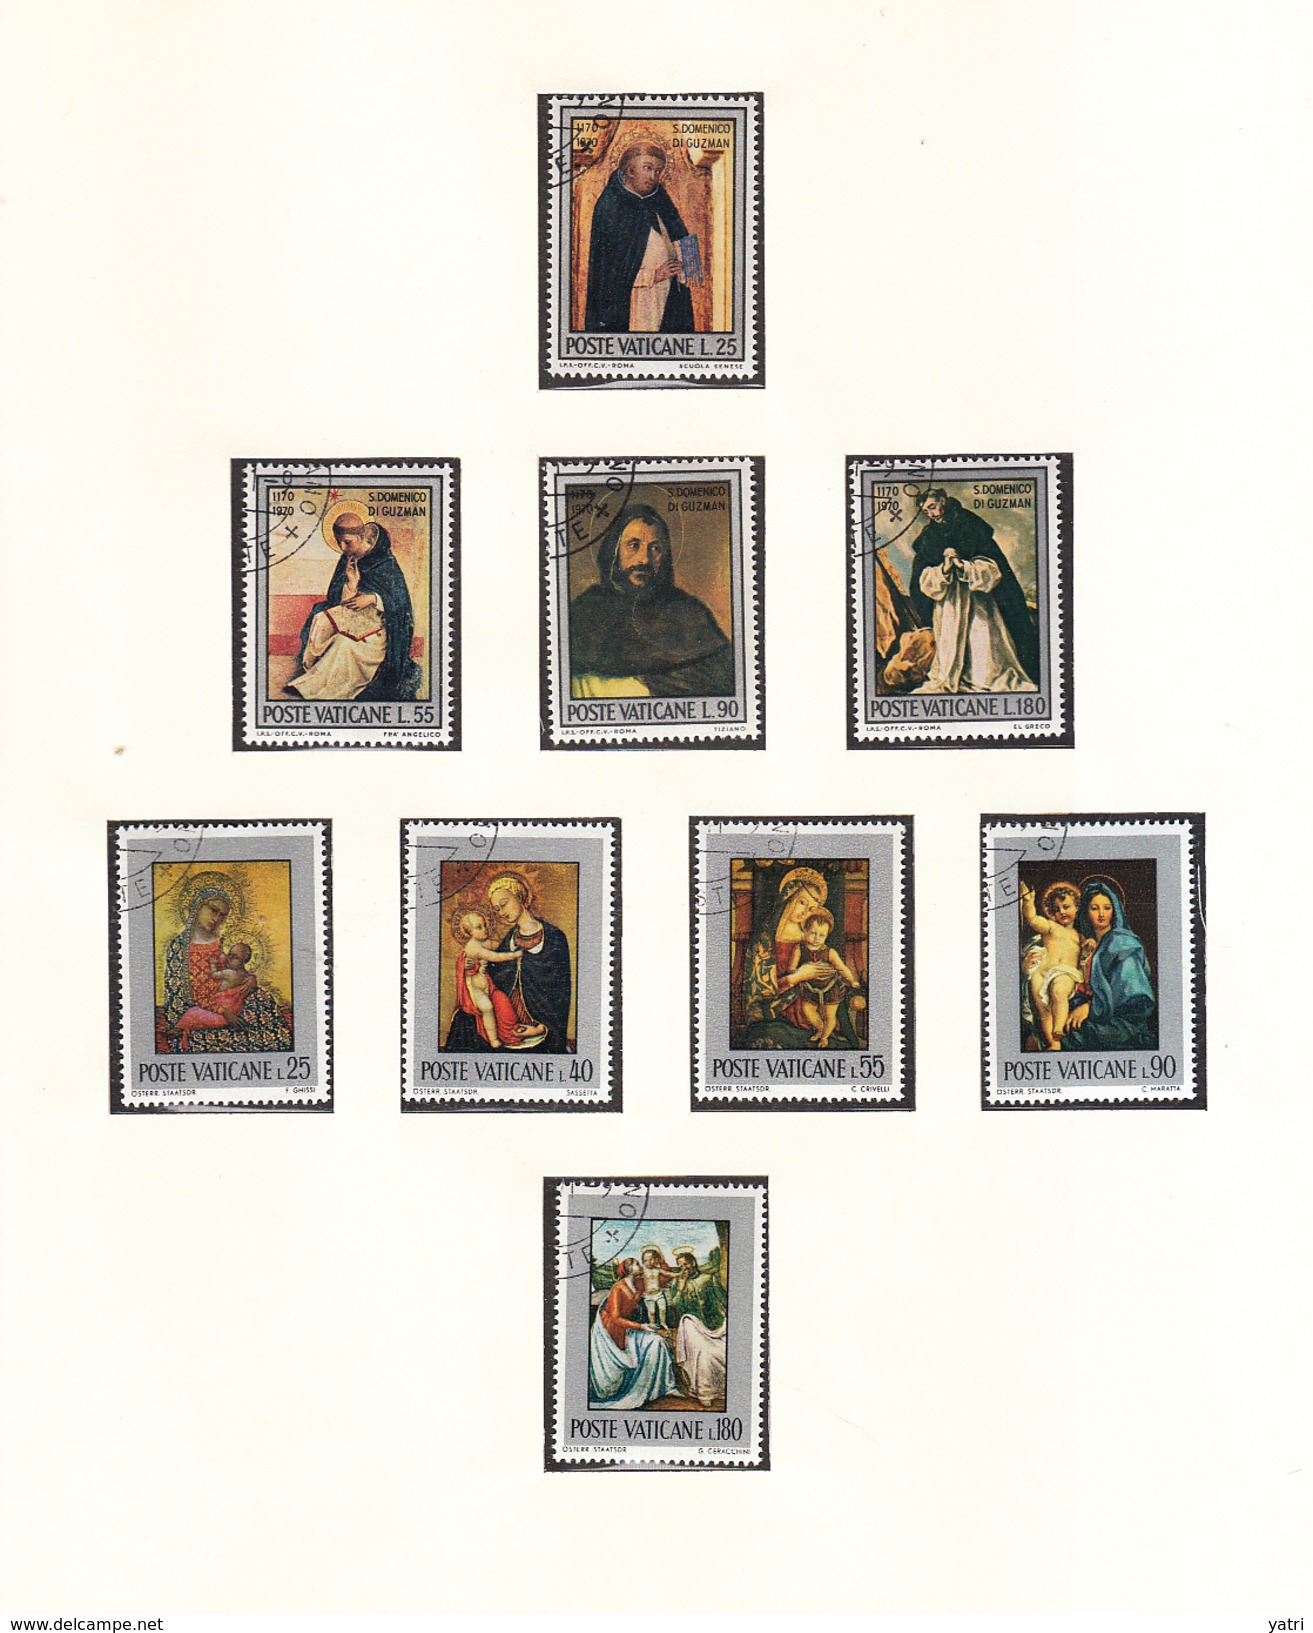 Vaticano - 1971 - Annata Completa | Complete Year Set (annullati) - Annate Complete